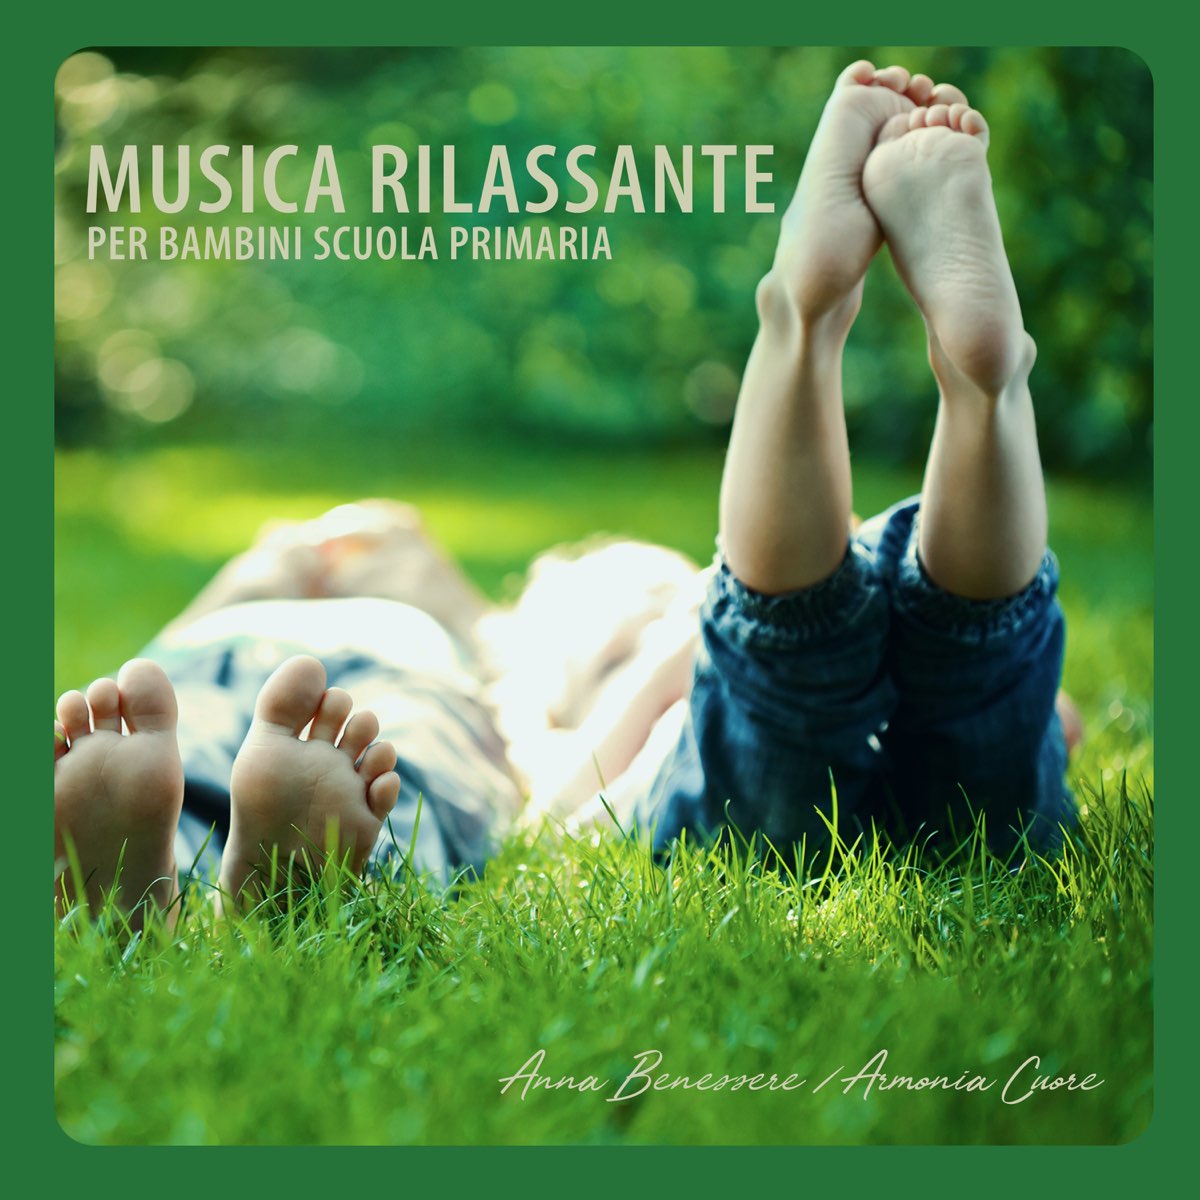 Musica rilassante per bambini scuola primaria – Canzone rilassante per  bambini - Album di Anna Benessere & Armonia Cuore - Apple Music